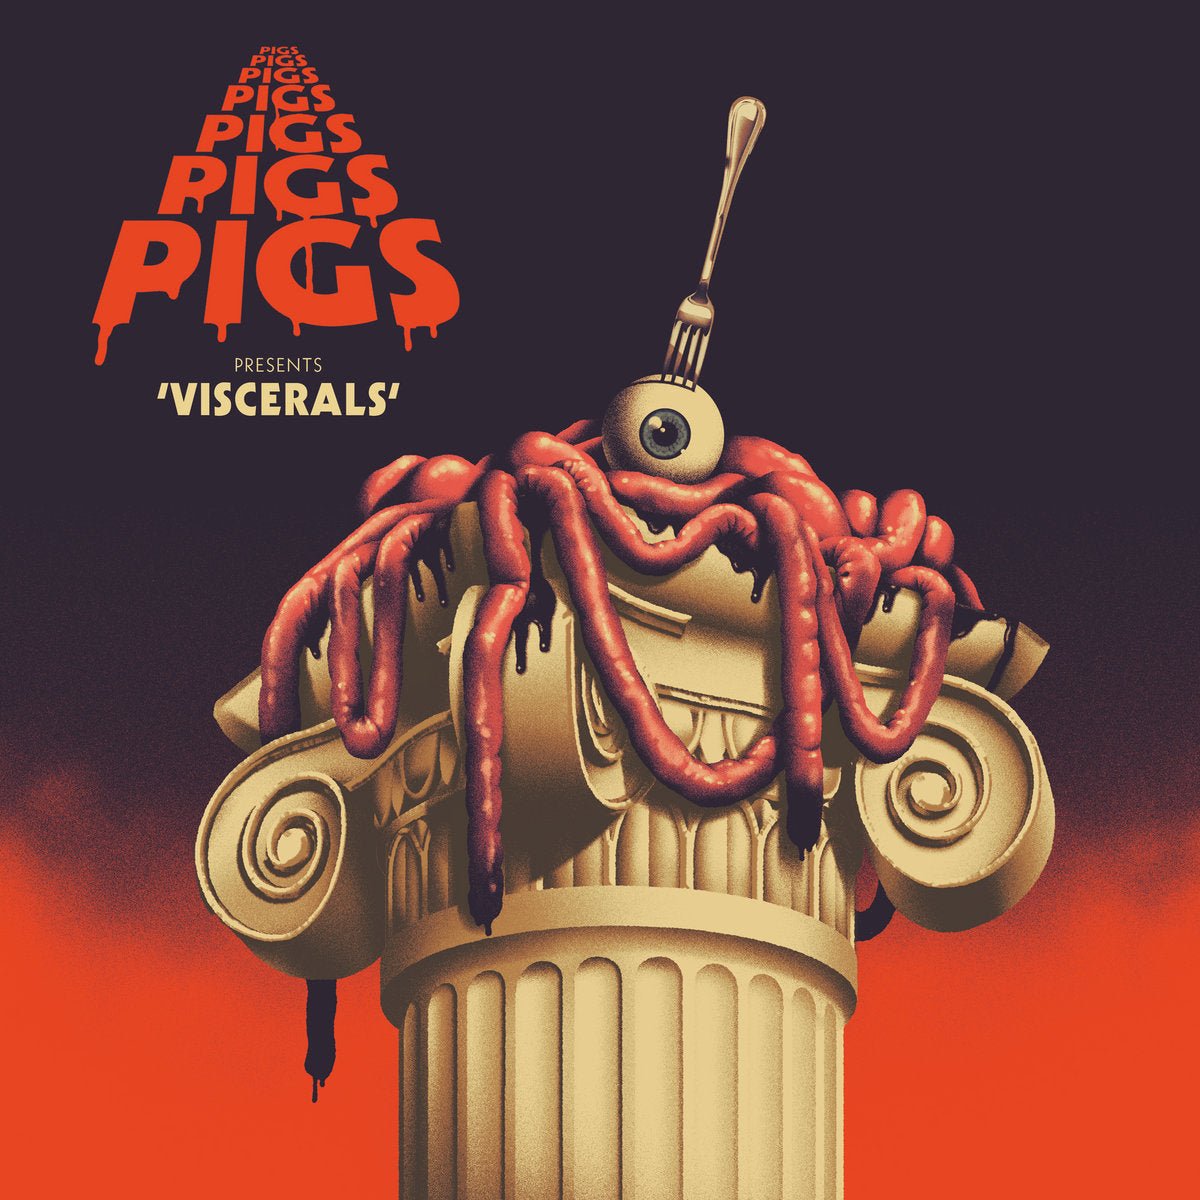 Pigs Pigs Pigs Pigs Pigs Pigs Pigs - Viscerals LP - Vinyl - Rocket